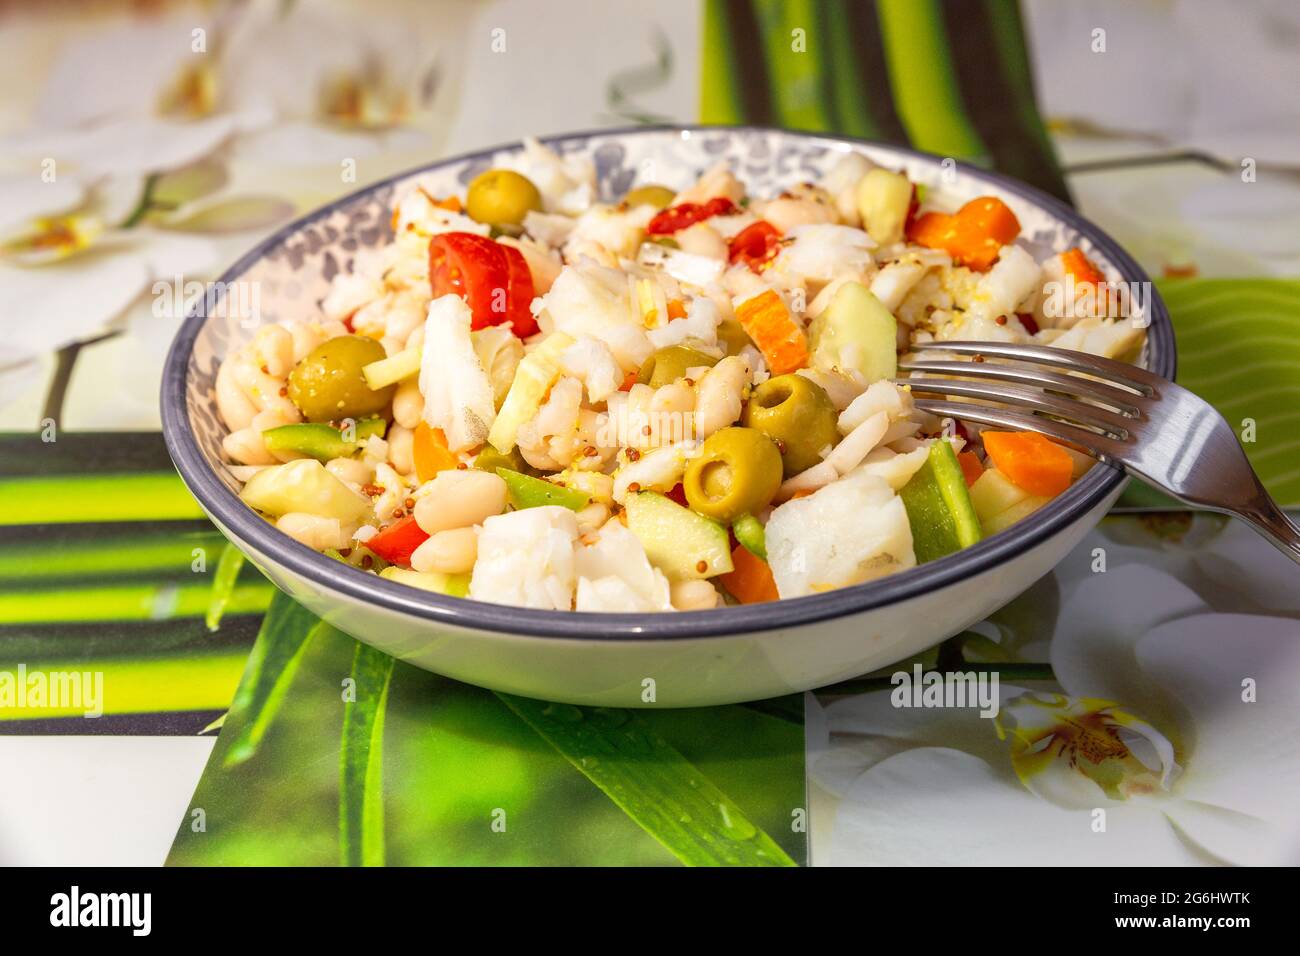 gros plan d'une salade de haricots blancs avec de la morue dans une assiette ronde Banque D'Images